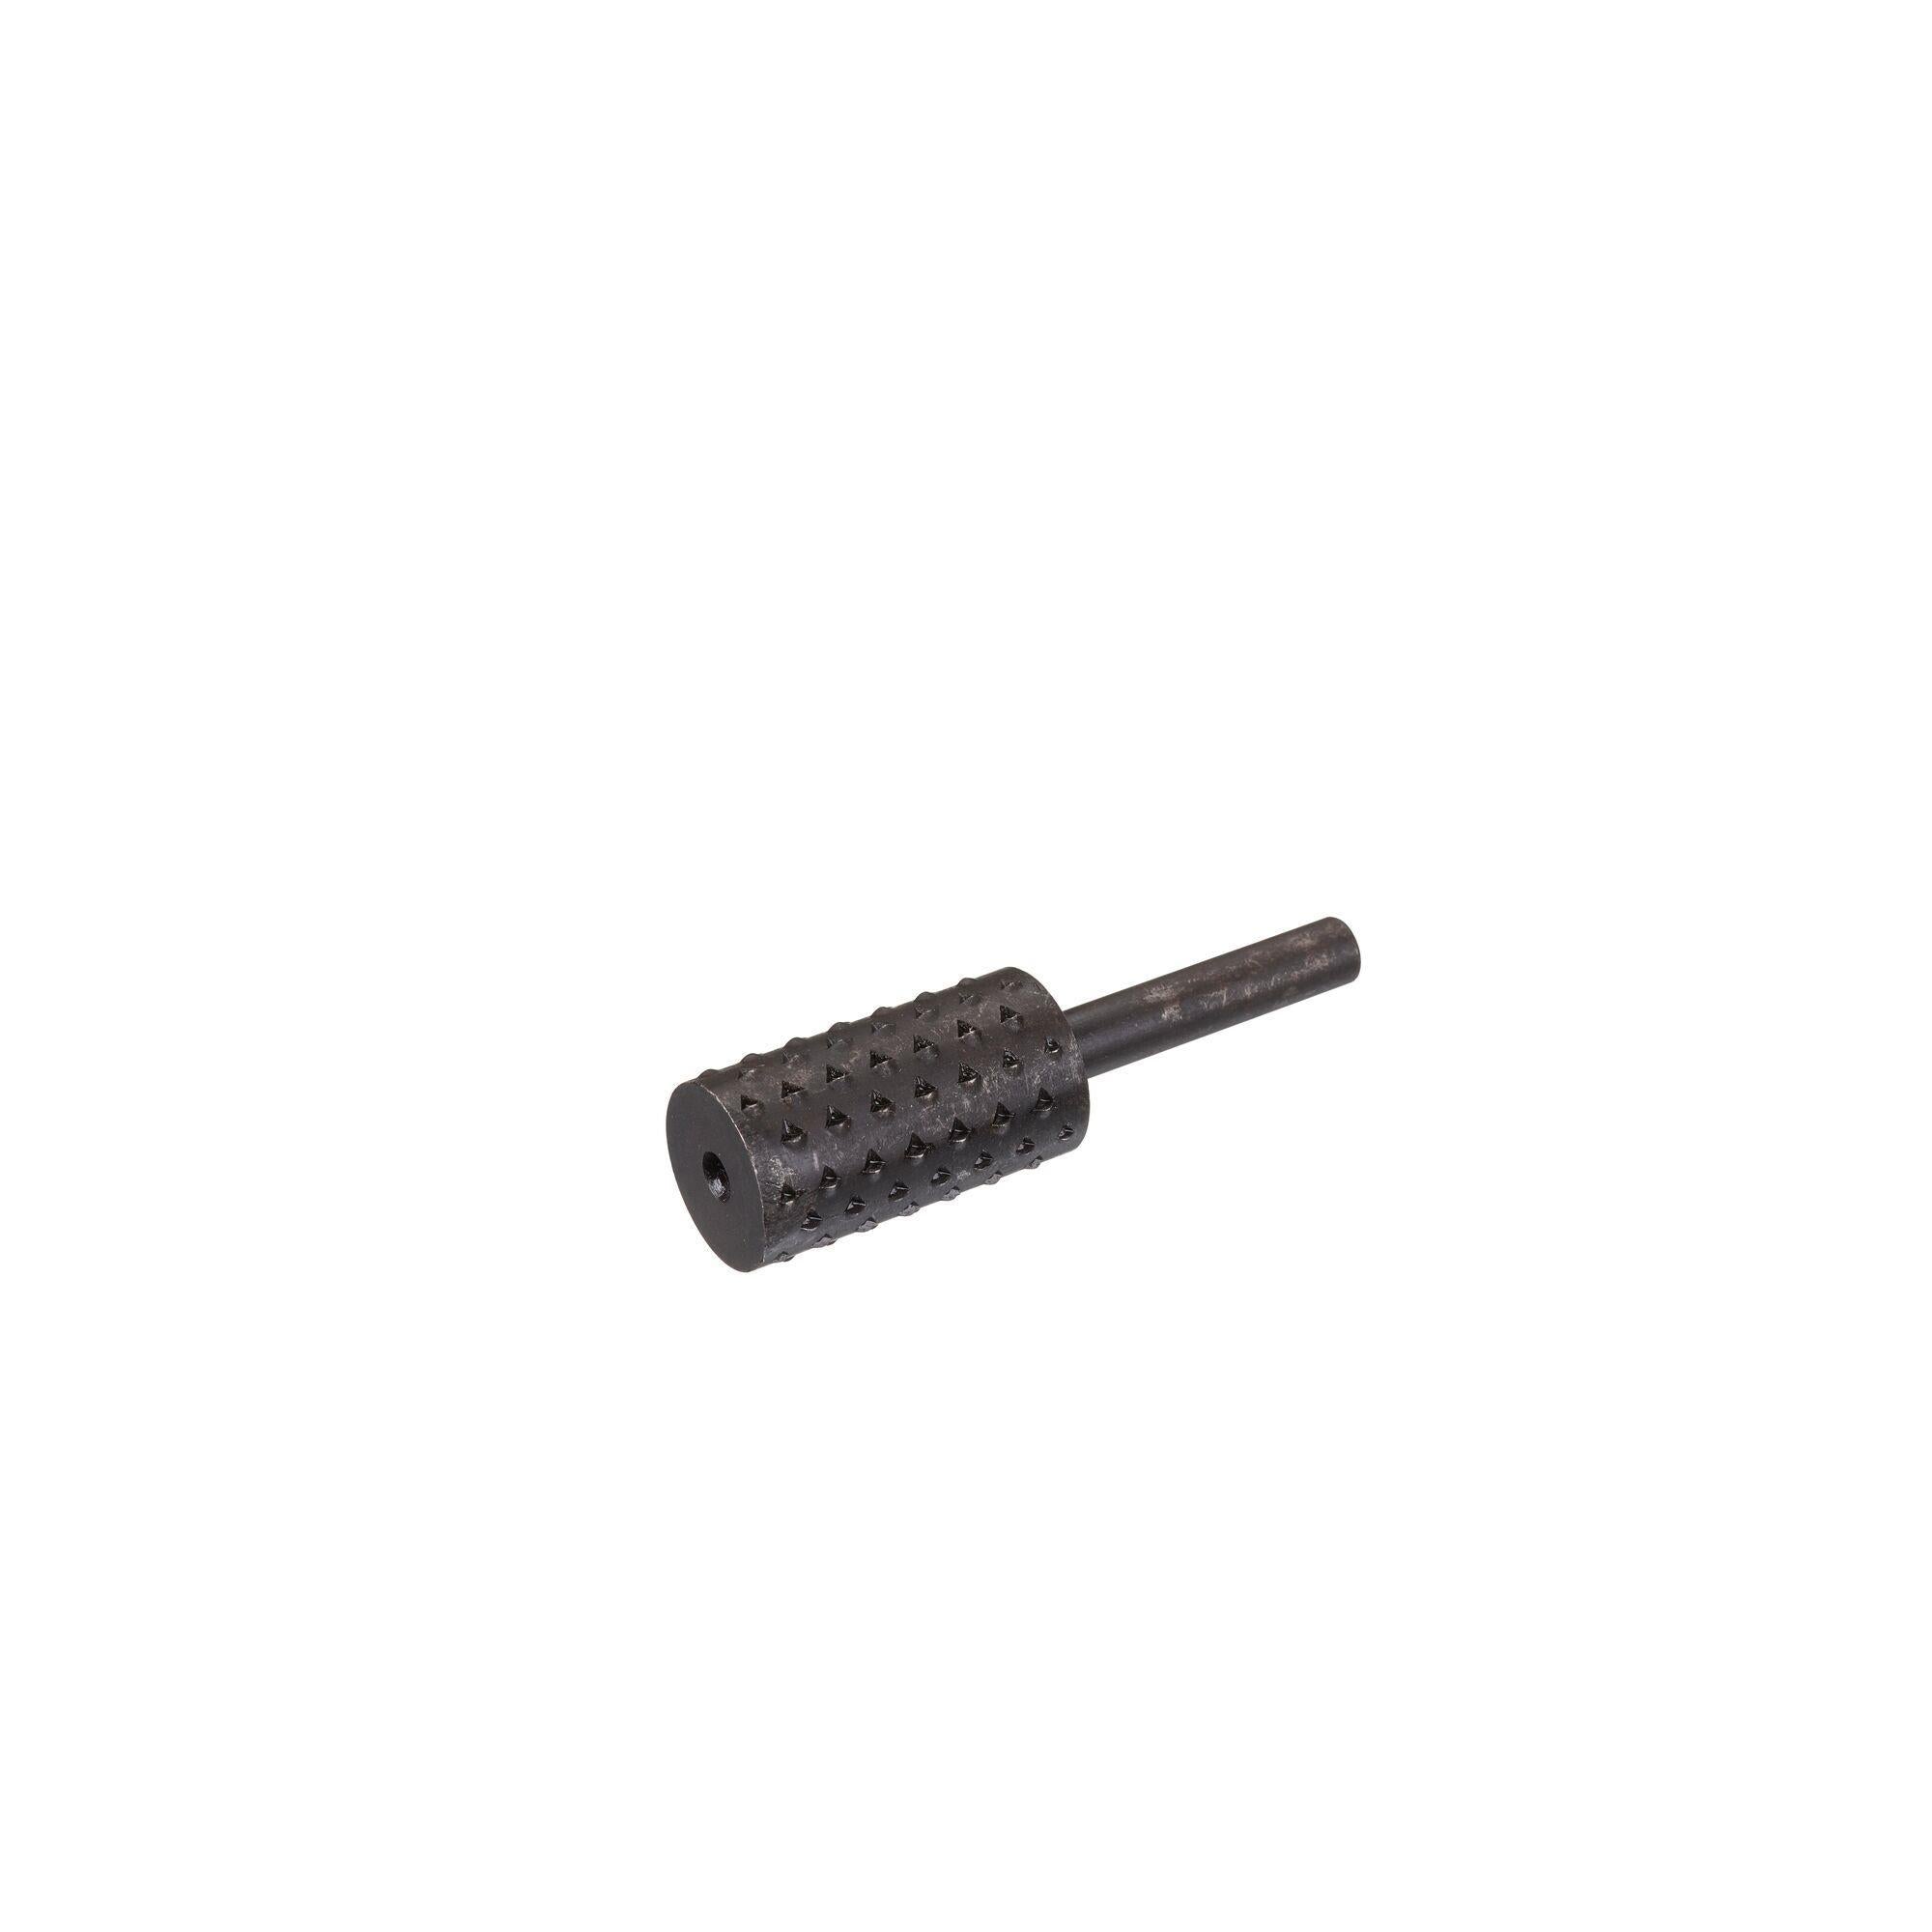 Ράσπα κυλινδρική για ξύλο με άξονα 8mm, βάθος κοπής 30mm και διάμετρο 16mm STA66155-QZ